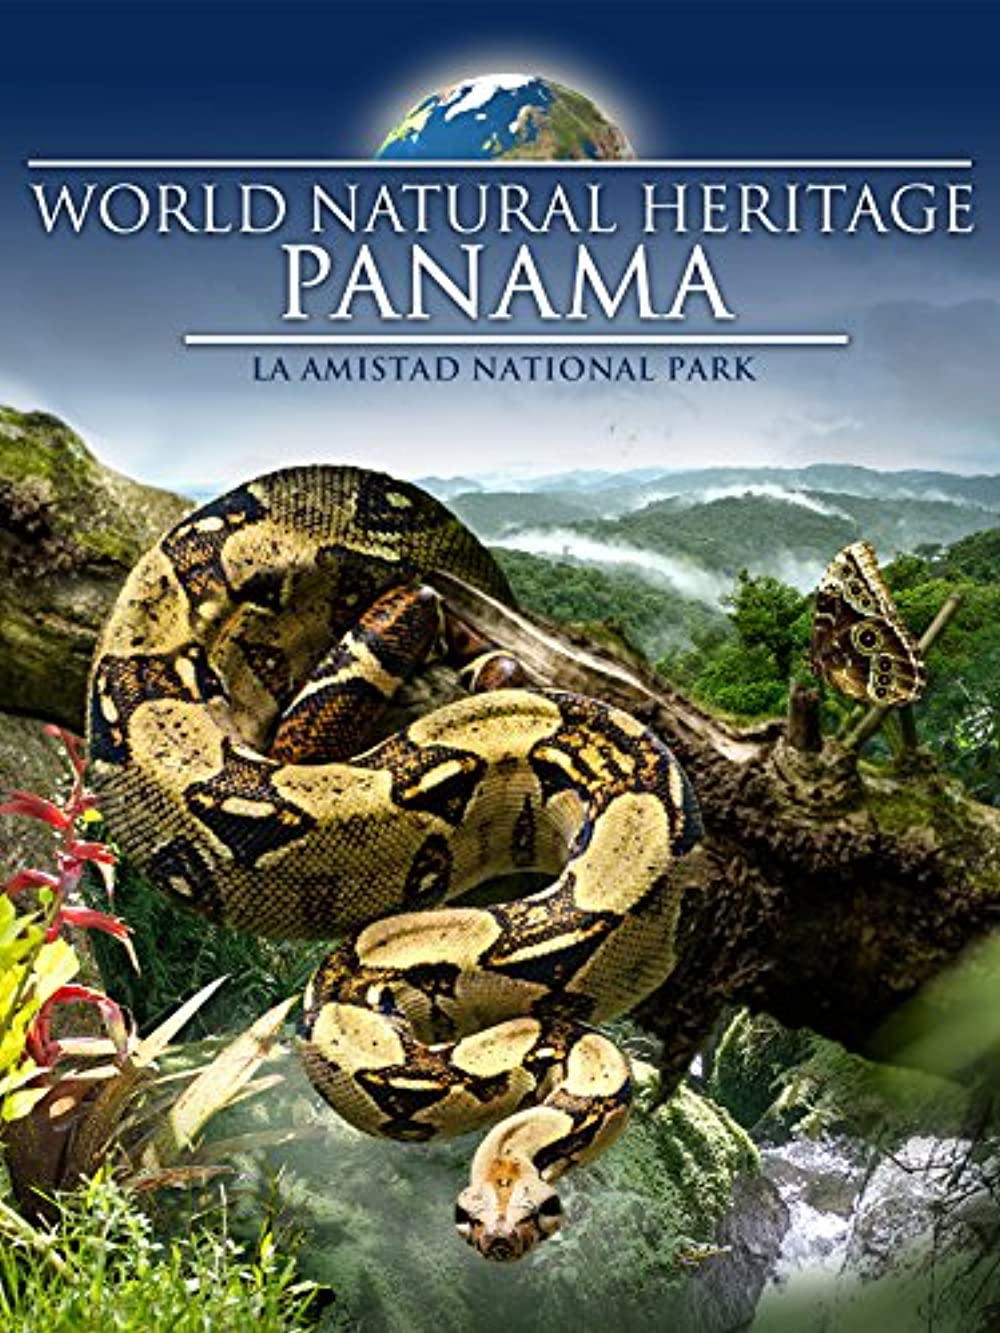 Всесвітня природна спадщина. Панама: Національний парк Ла Амістад